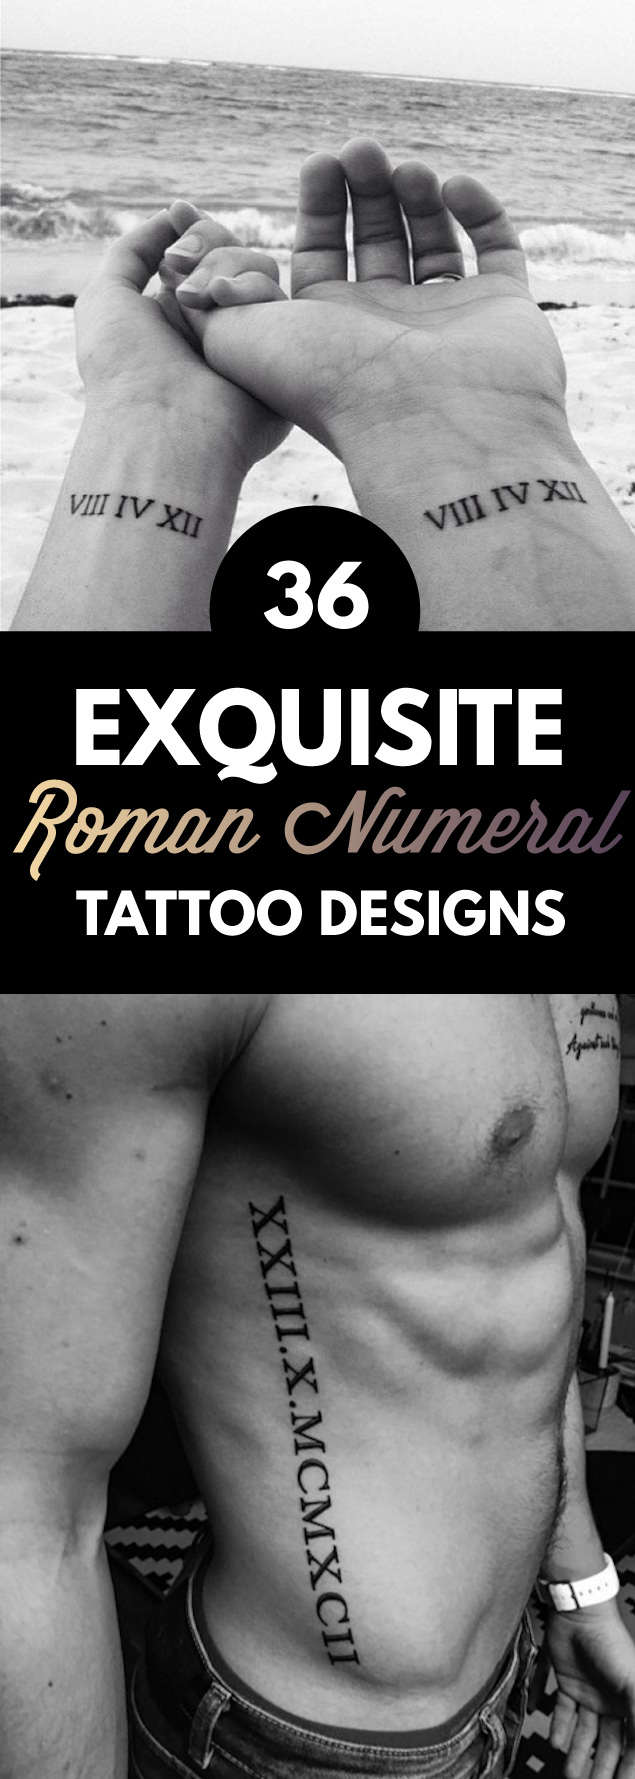 36 Exquisite Roman Numeral Tattoos Designs | TattooBlend